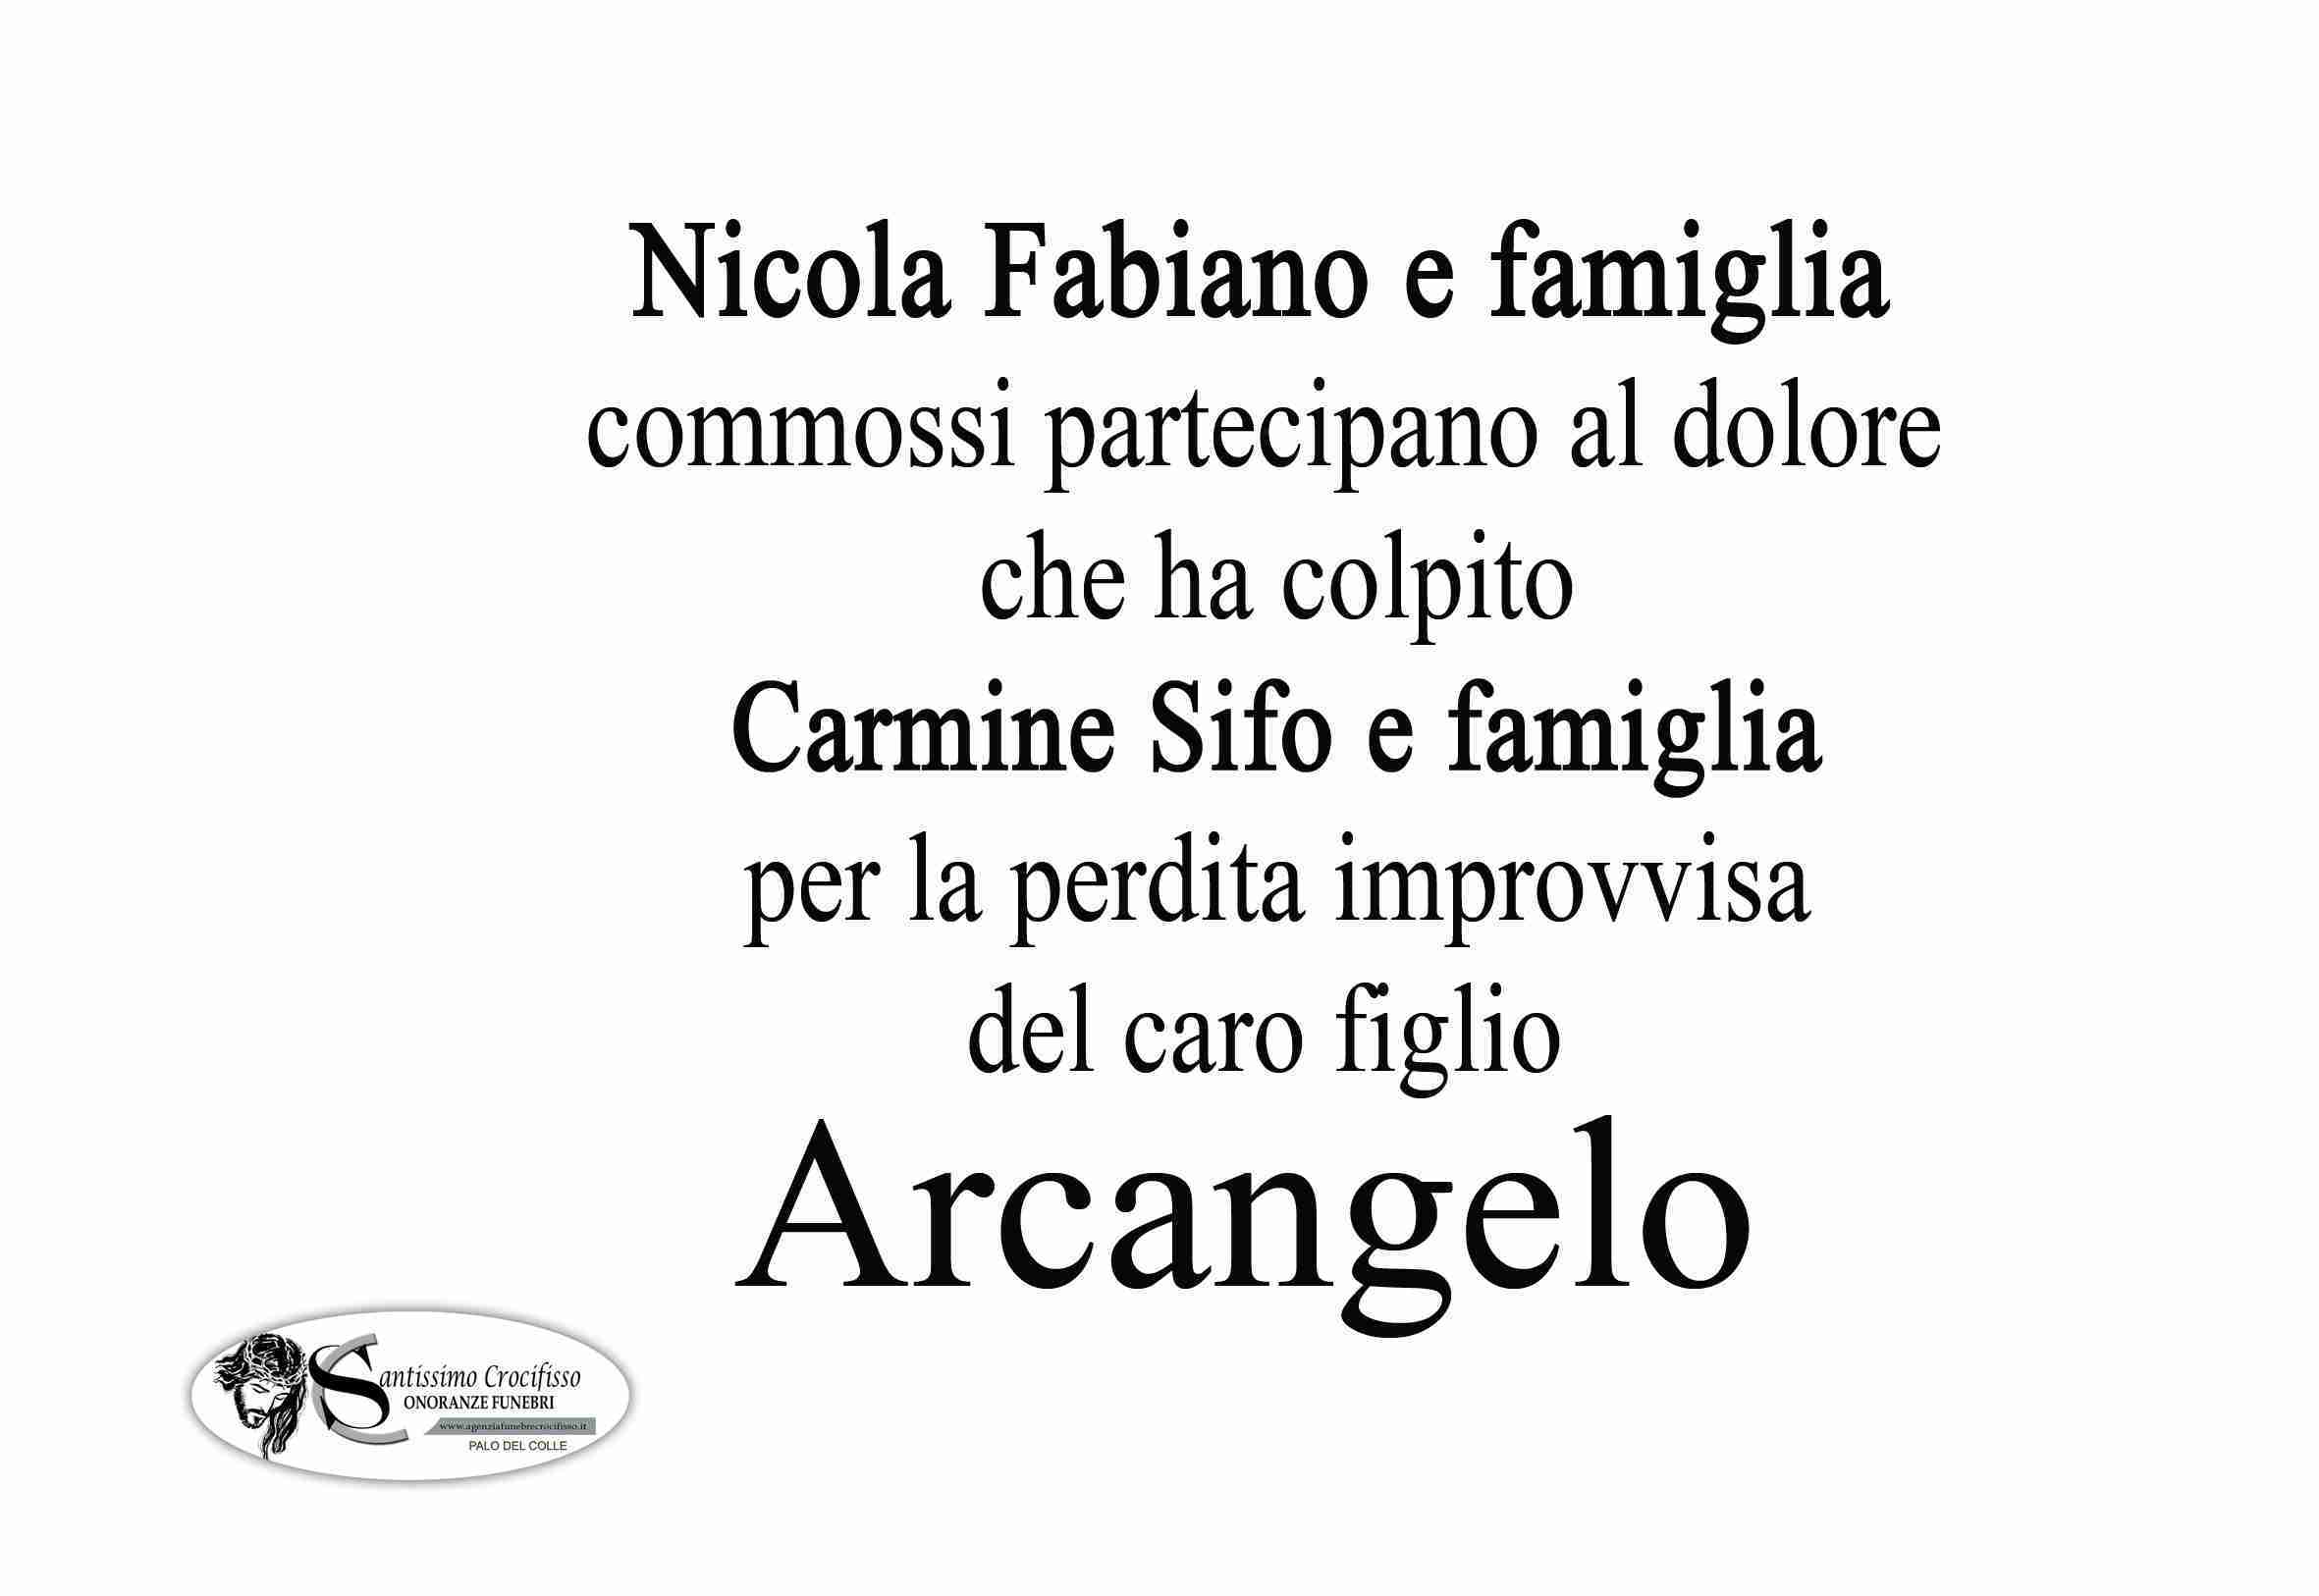 Arcangelo Sifo